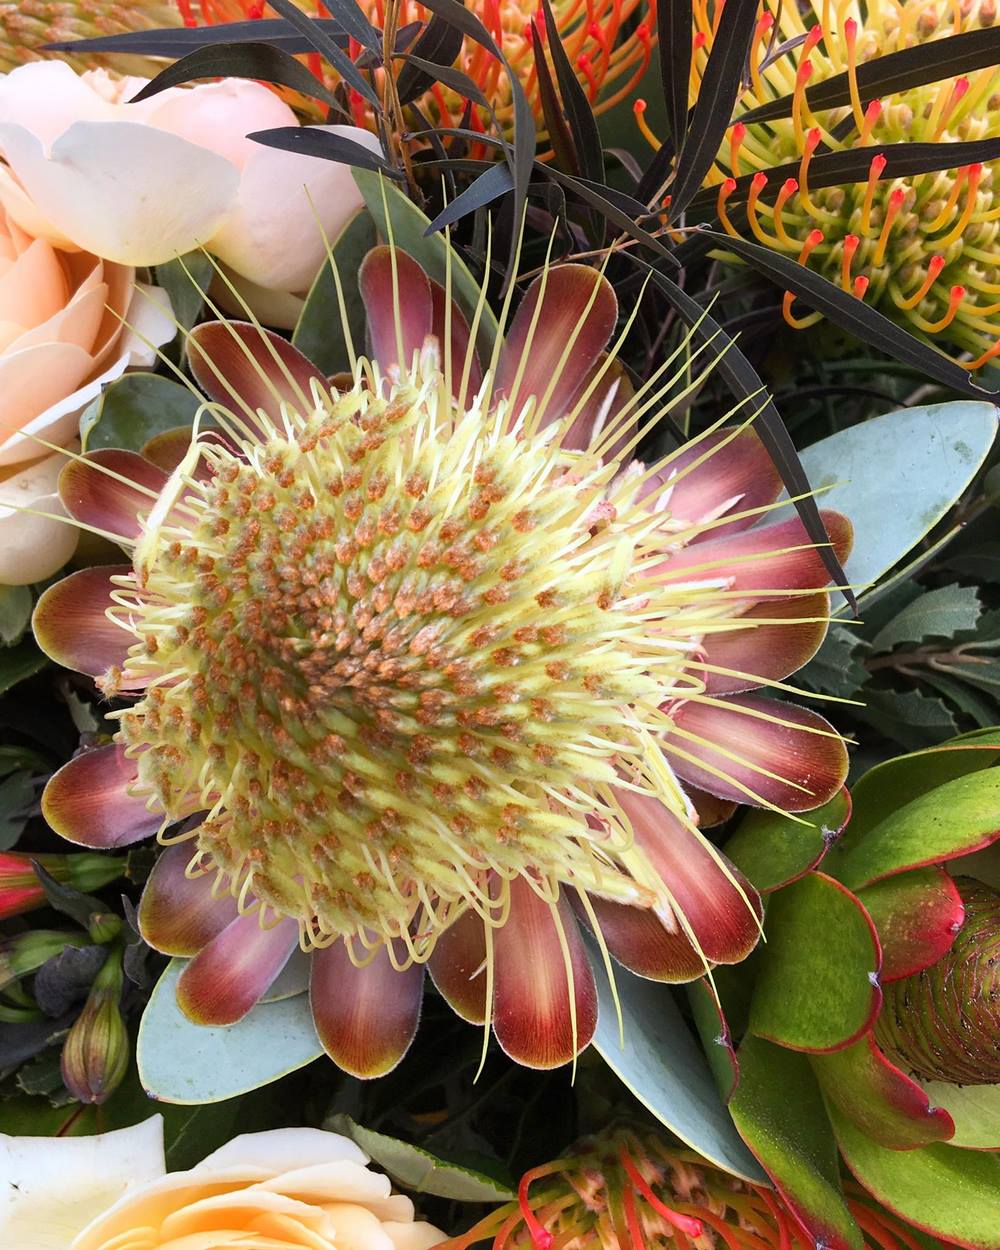 Proteáceas: las flores del fynbos utilizadas en algunos arreglos florales